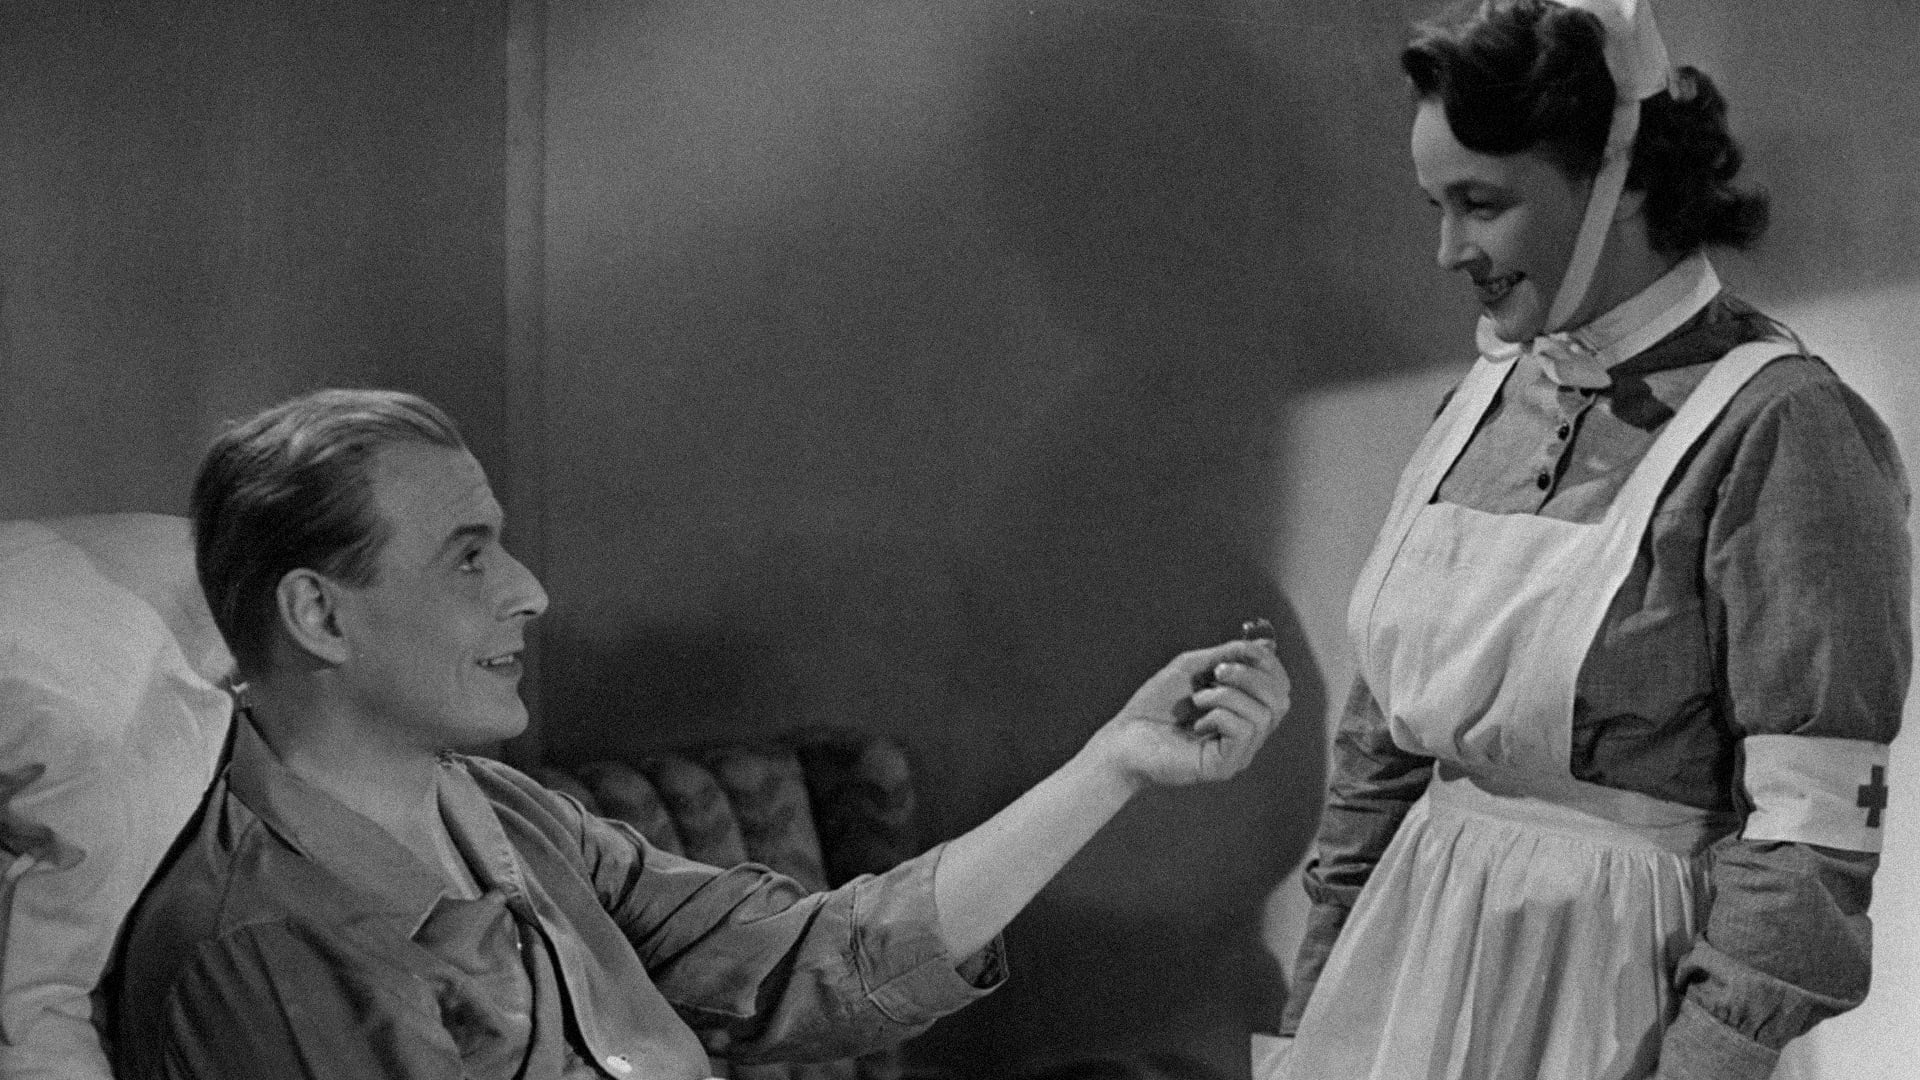 Flickan från tredje raden (1949)